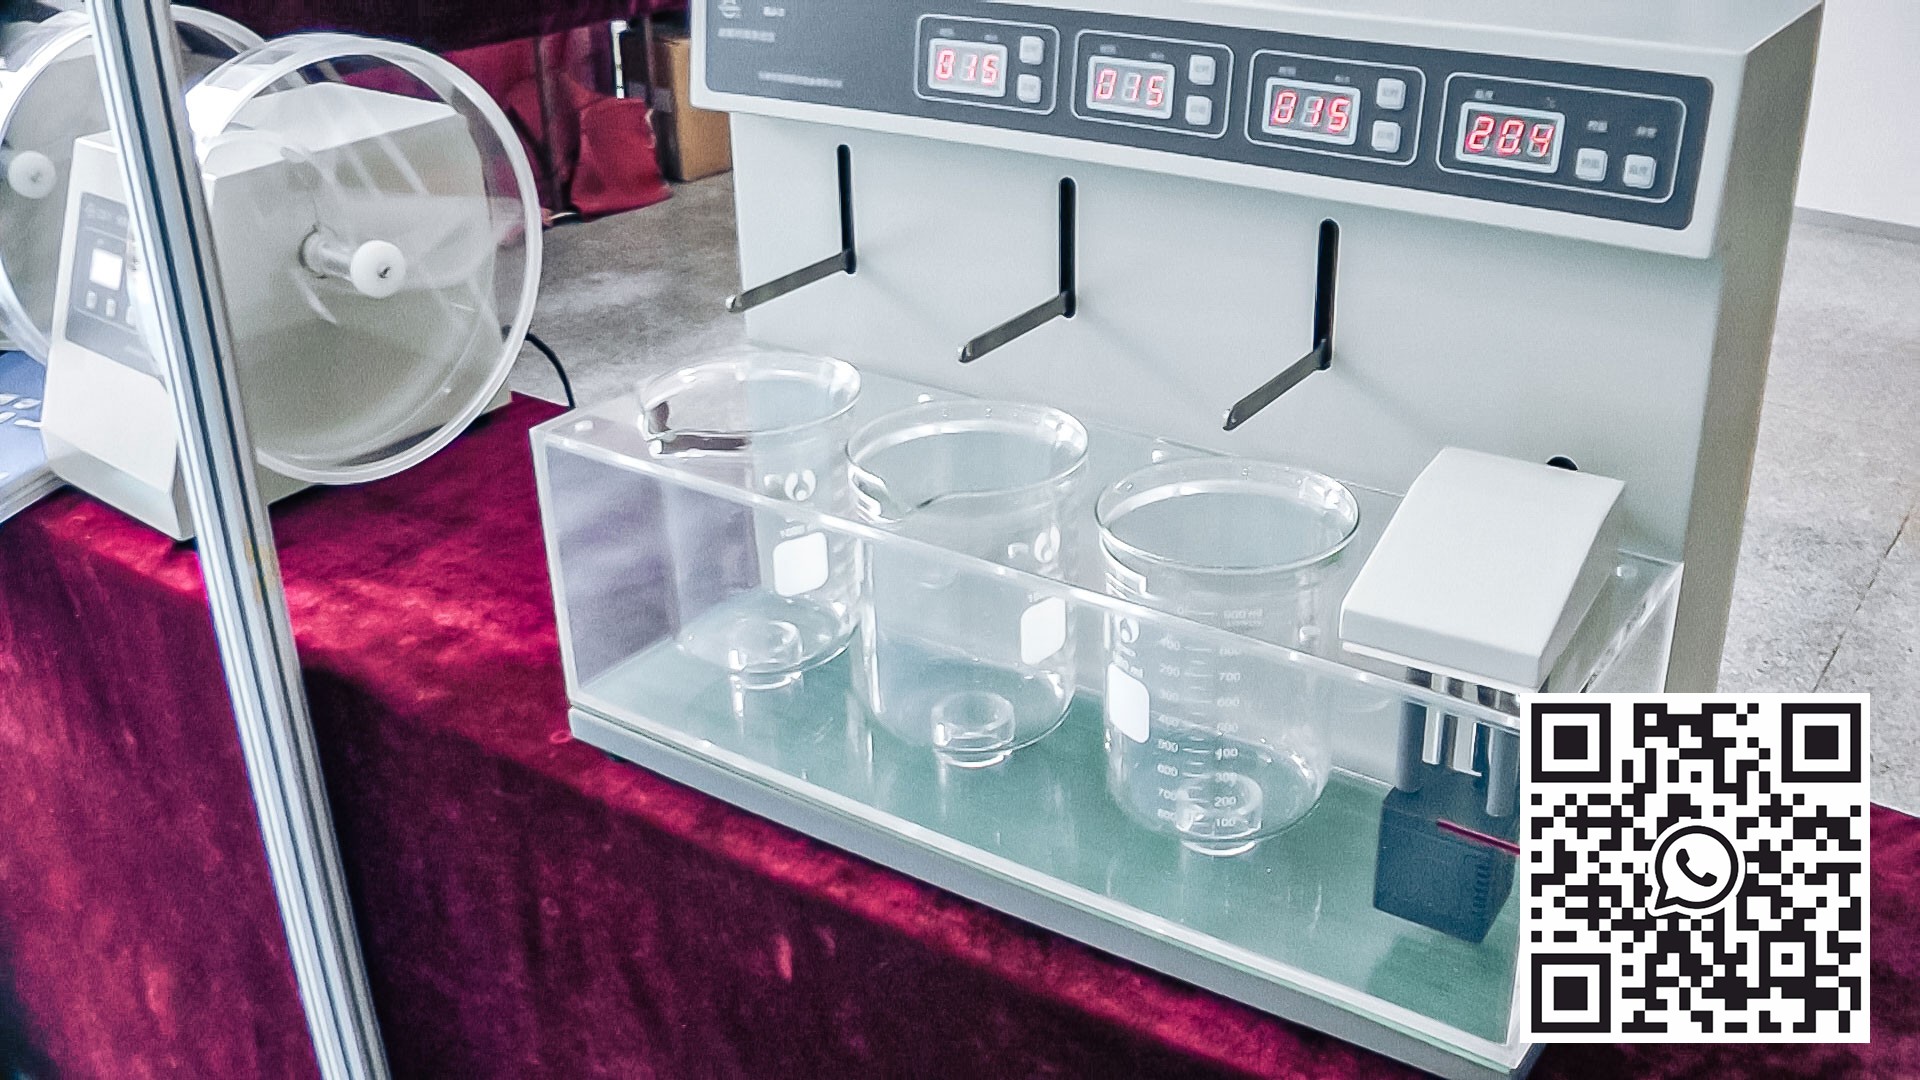 Automatyczny sprzęt laboratoryjny do testowania jakości tabletek i peletów w produkcji farmaceutycznej